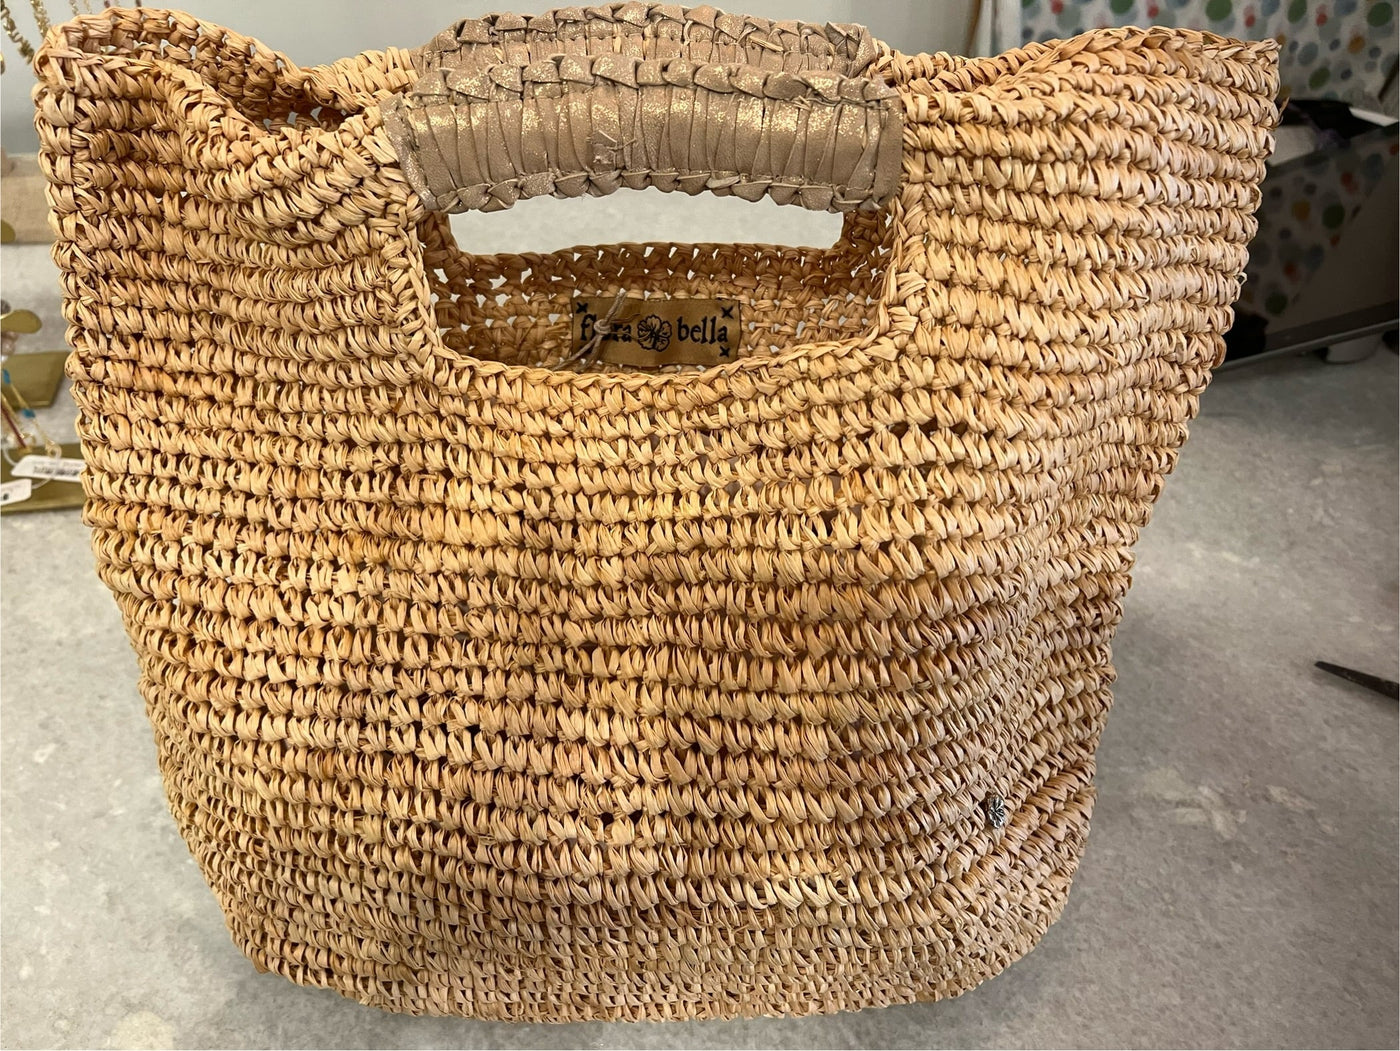 Napa: Crochet Raffia/Leather Tote by Flora Bella